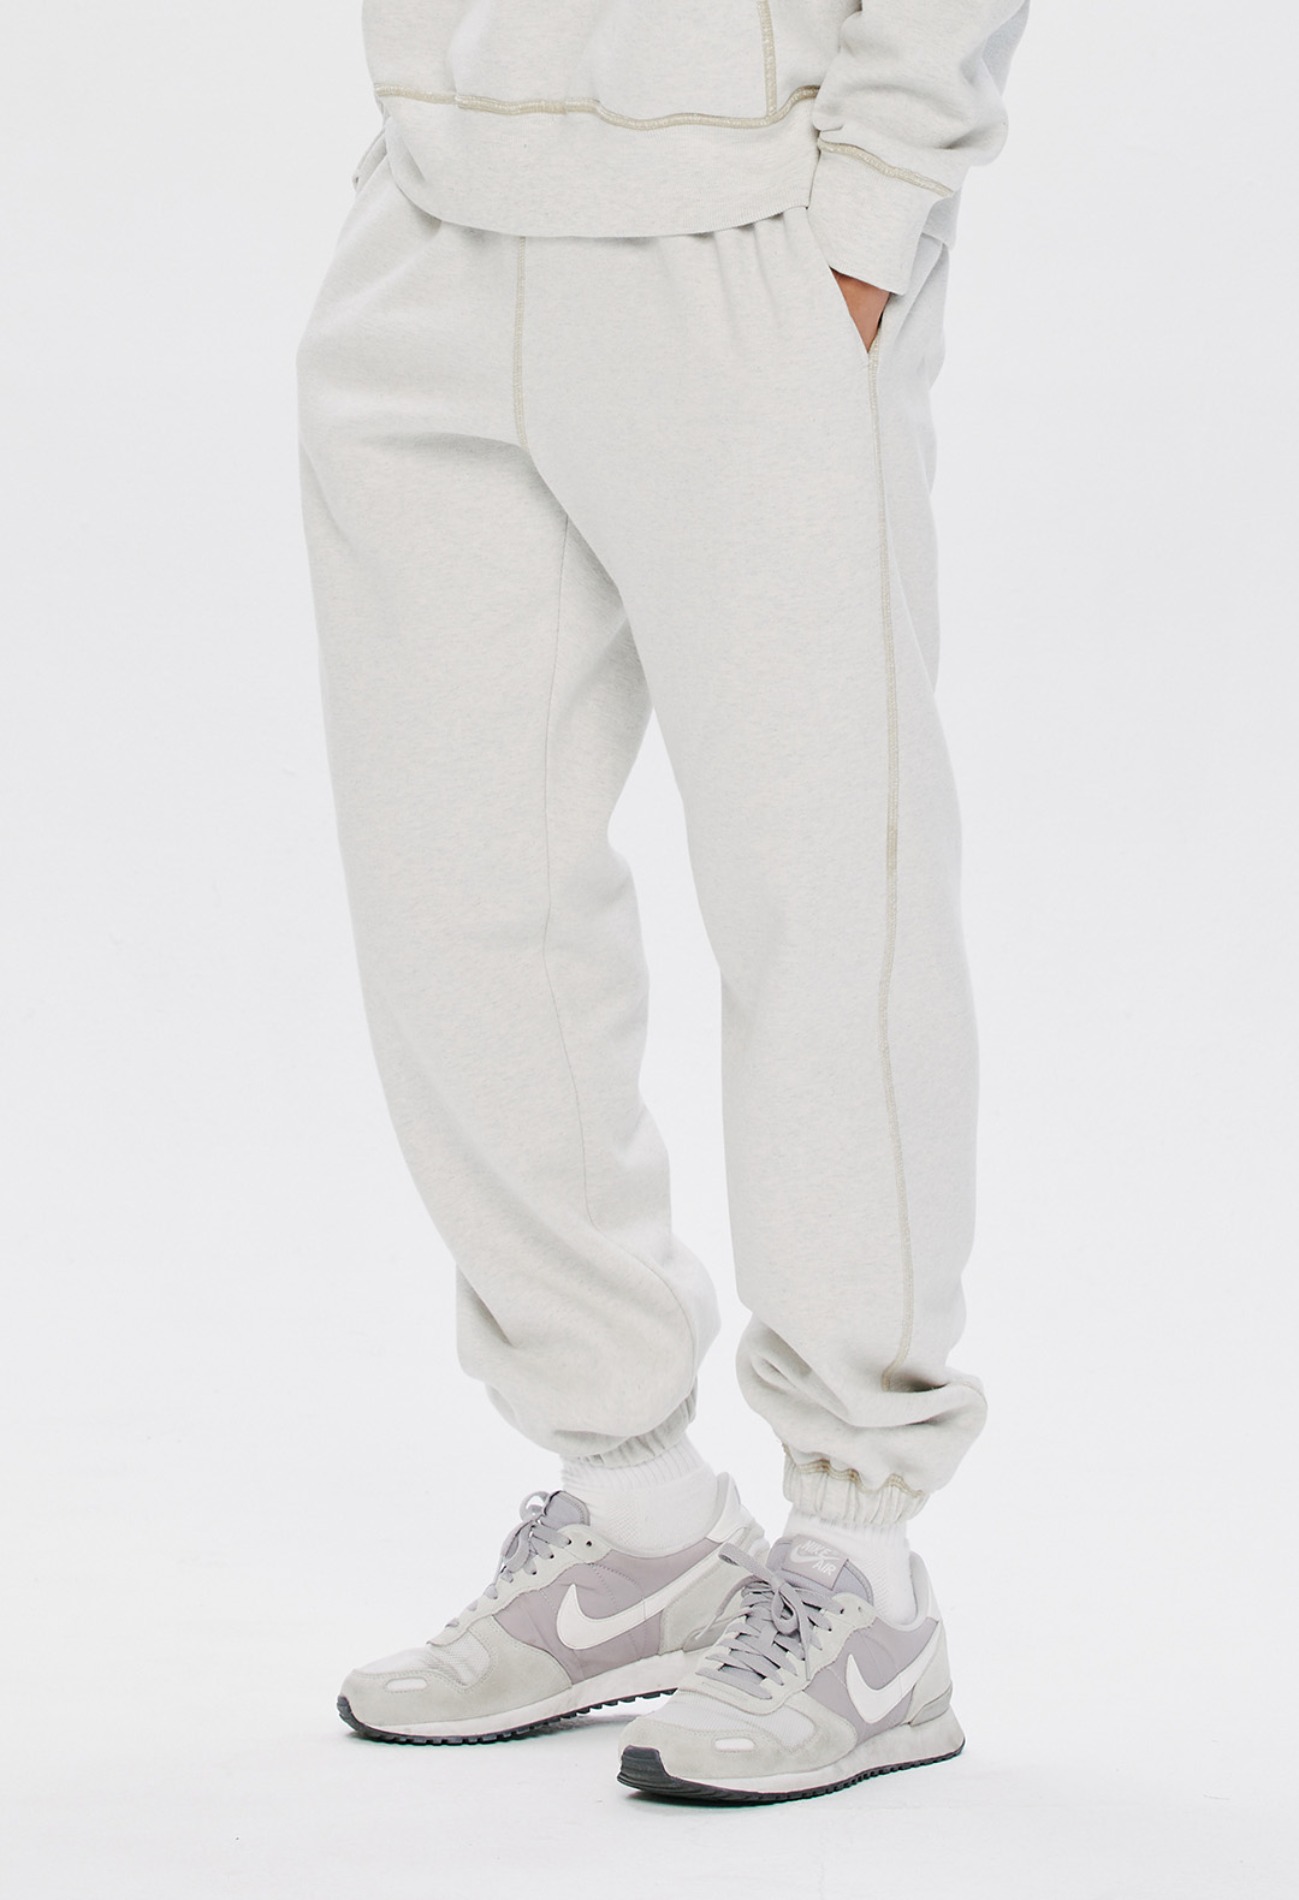 keek Reversible Sweatpants by KEEK CREW - Otmeal 스트릿패션 유니섹스브랜드 커플시밀러룩 남자쇼핑몰 여성의류쇼핑몰 후드티 힙색